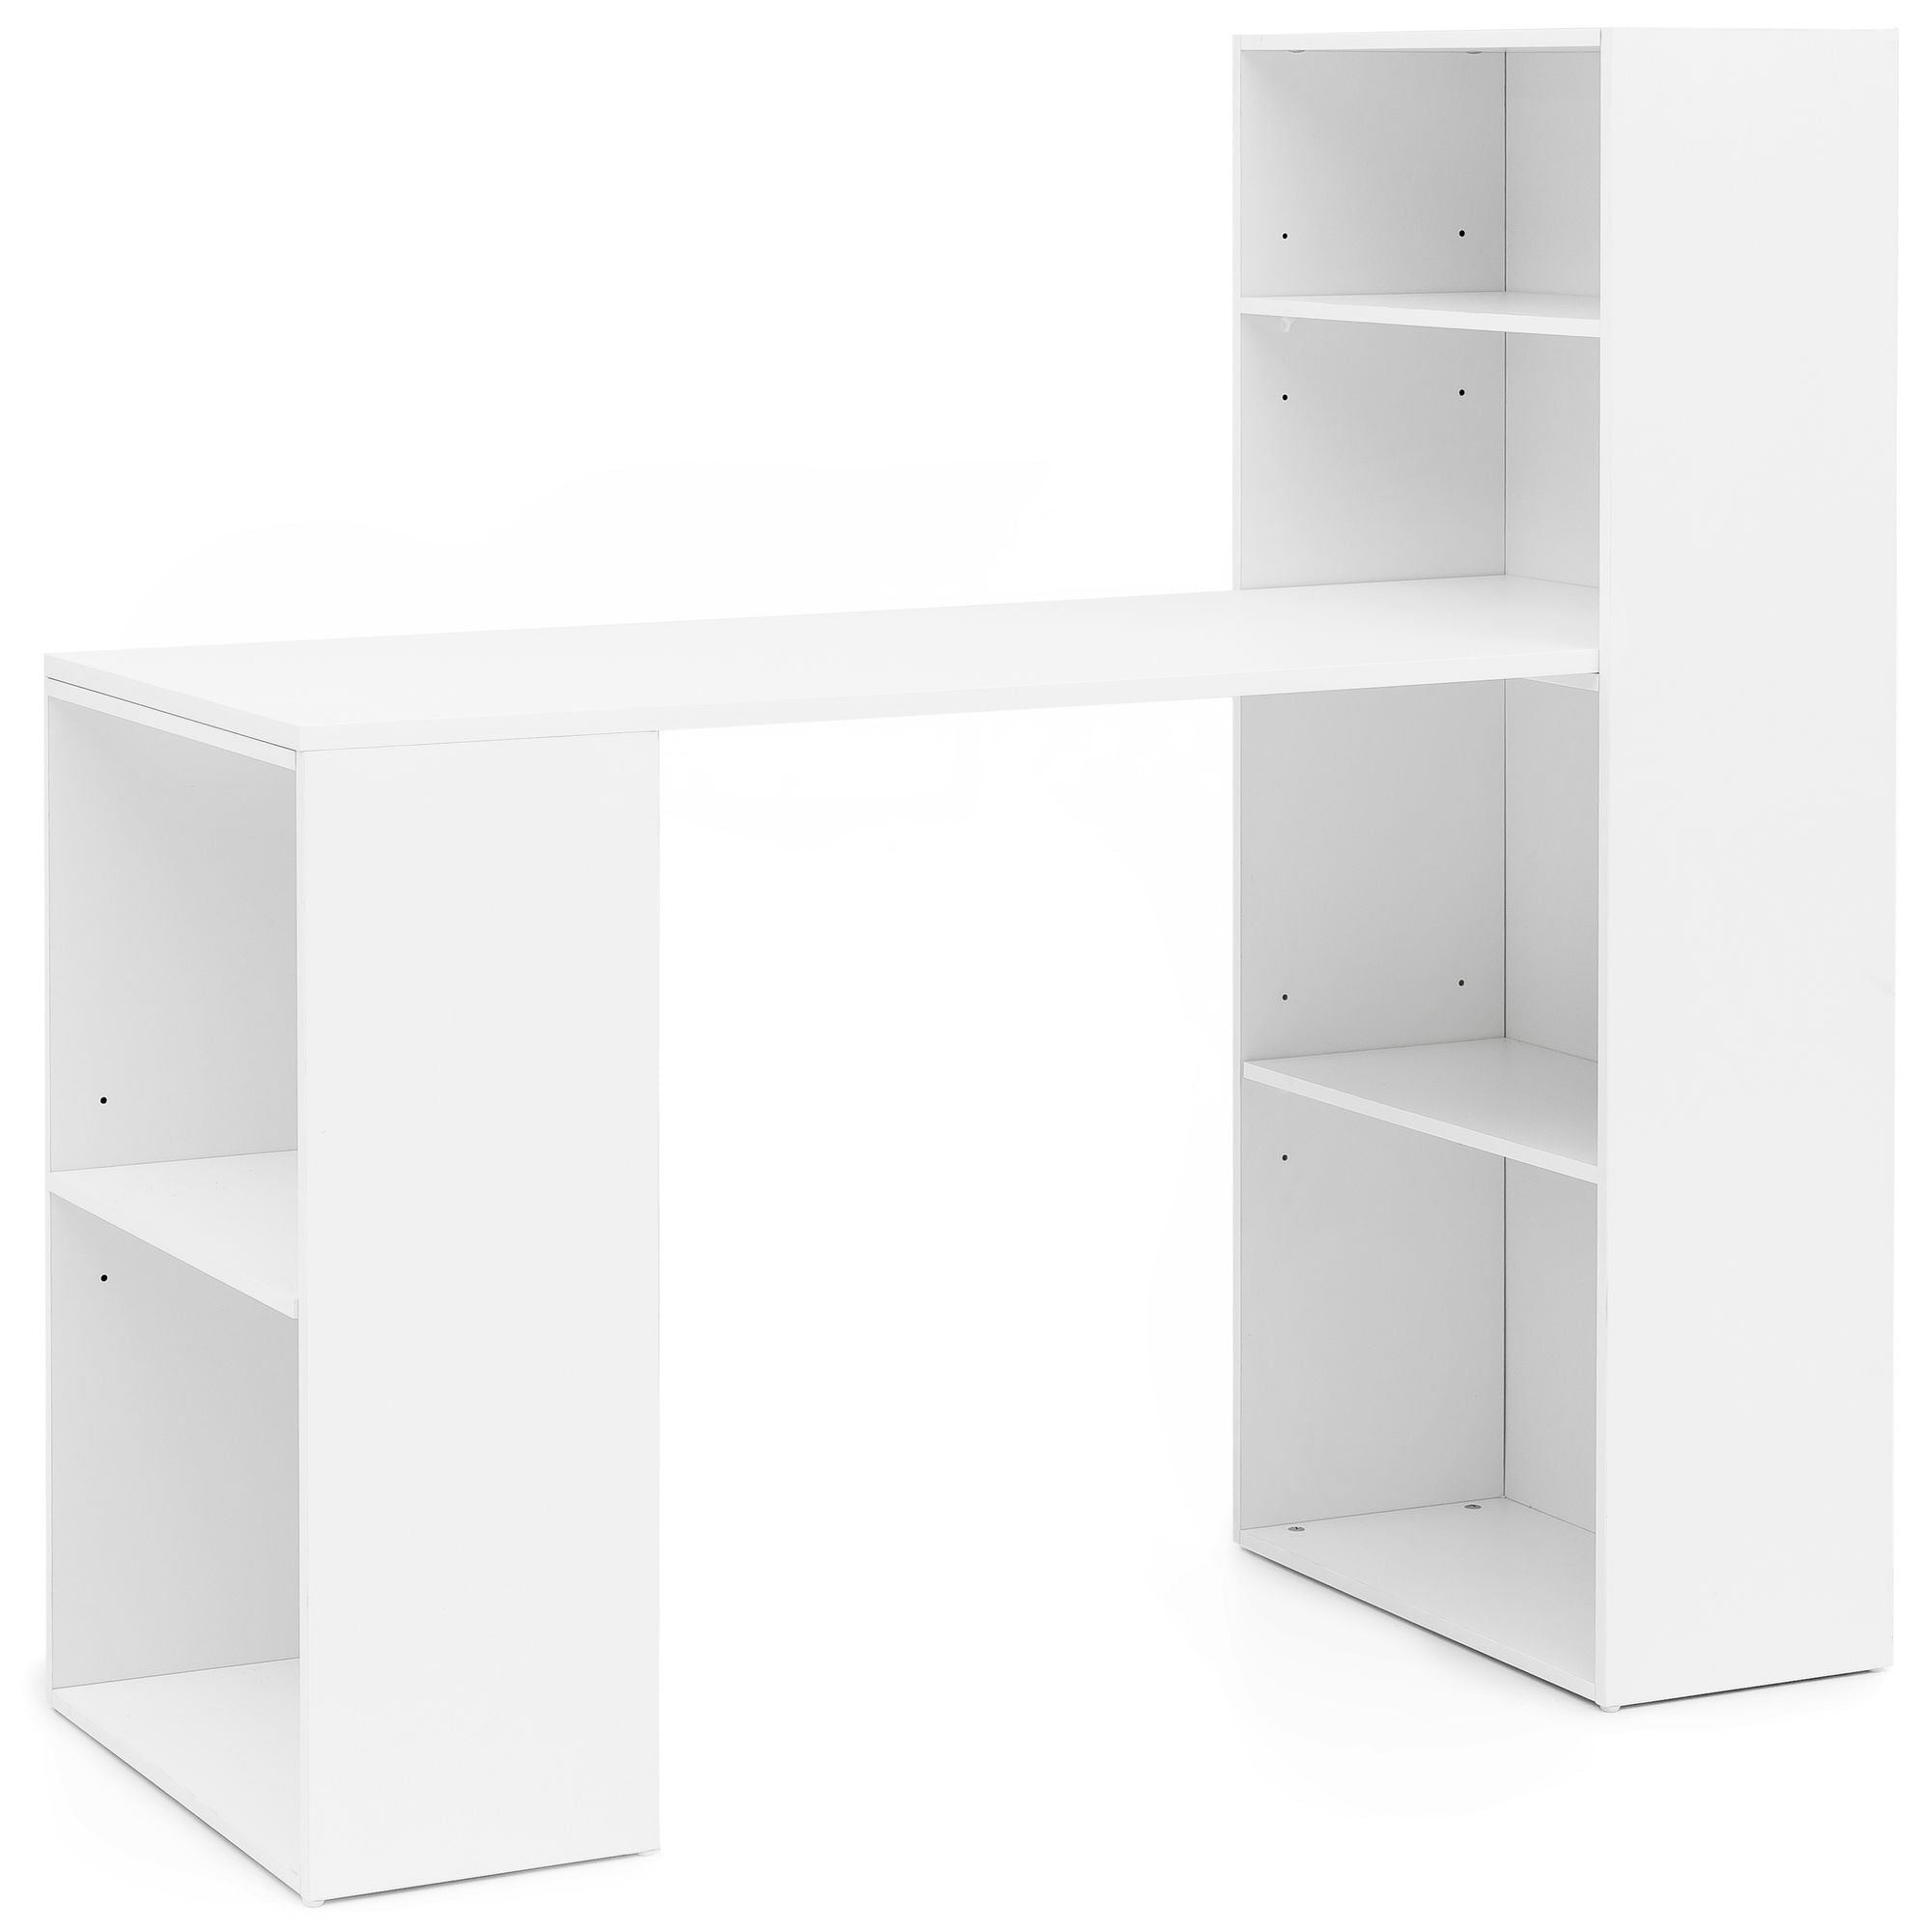 Billede af Skrivebord med reol, skandinavisk stil, 120 x 120 x 53 cm, hvid